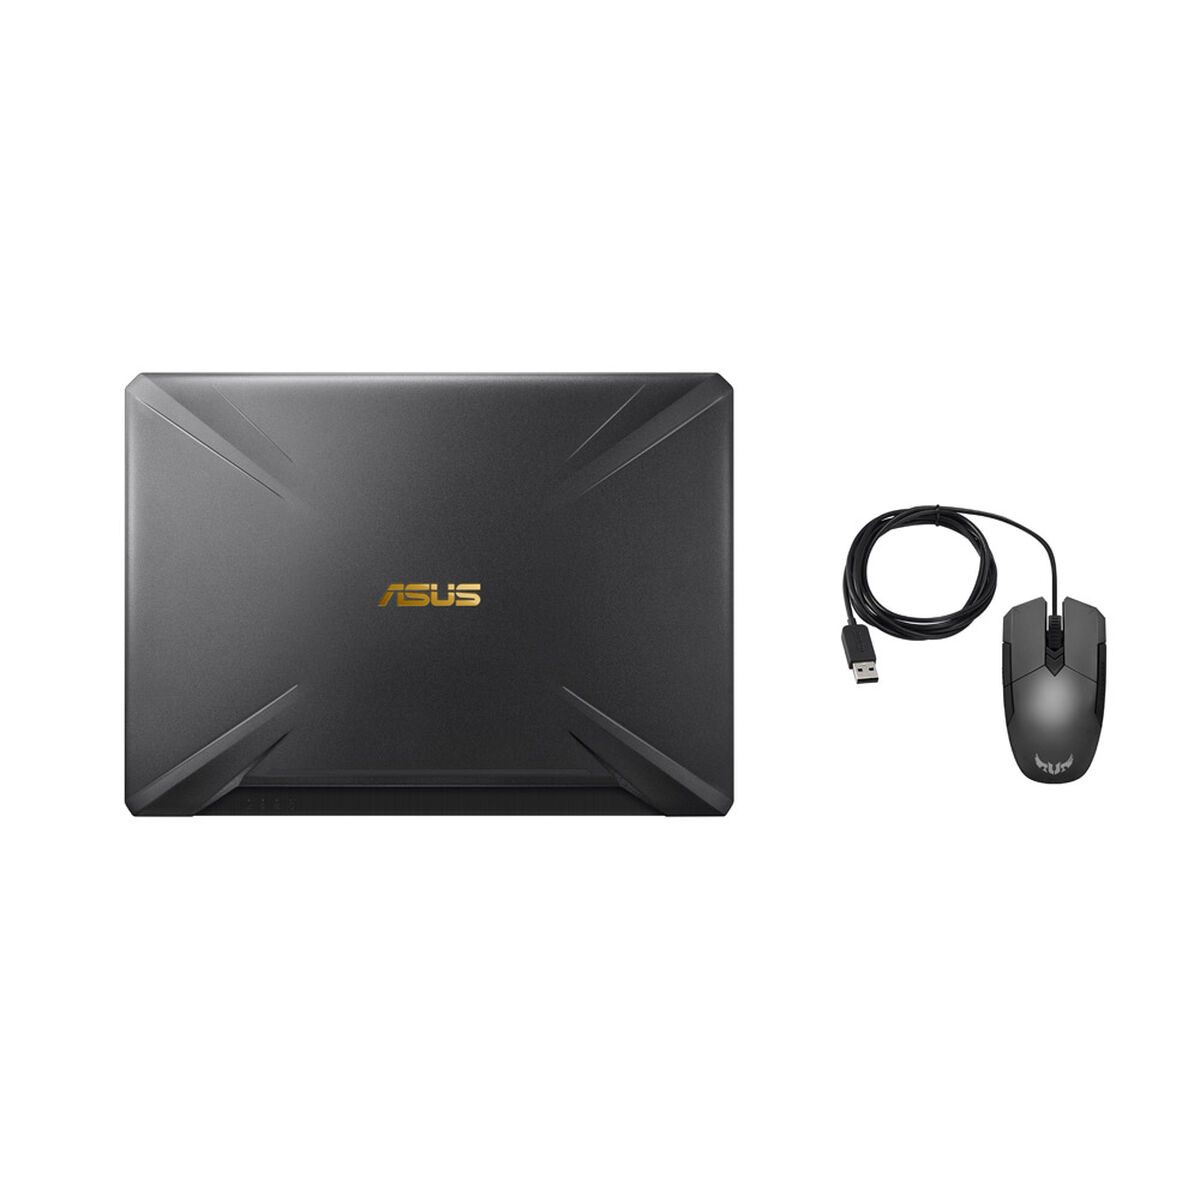 Notebook Gamer Asus FX505DU-AL090T Ryzen 7-3750H 8GB 1TB 15.6” NVIDIA GTX 1660Ti